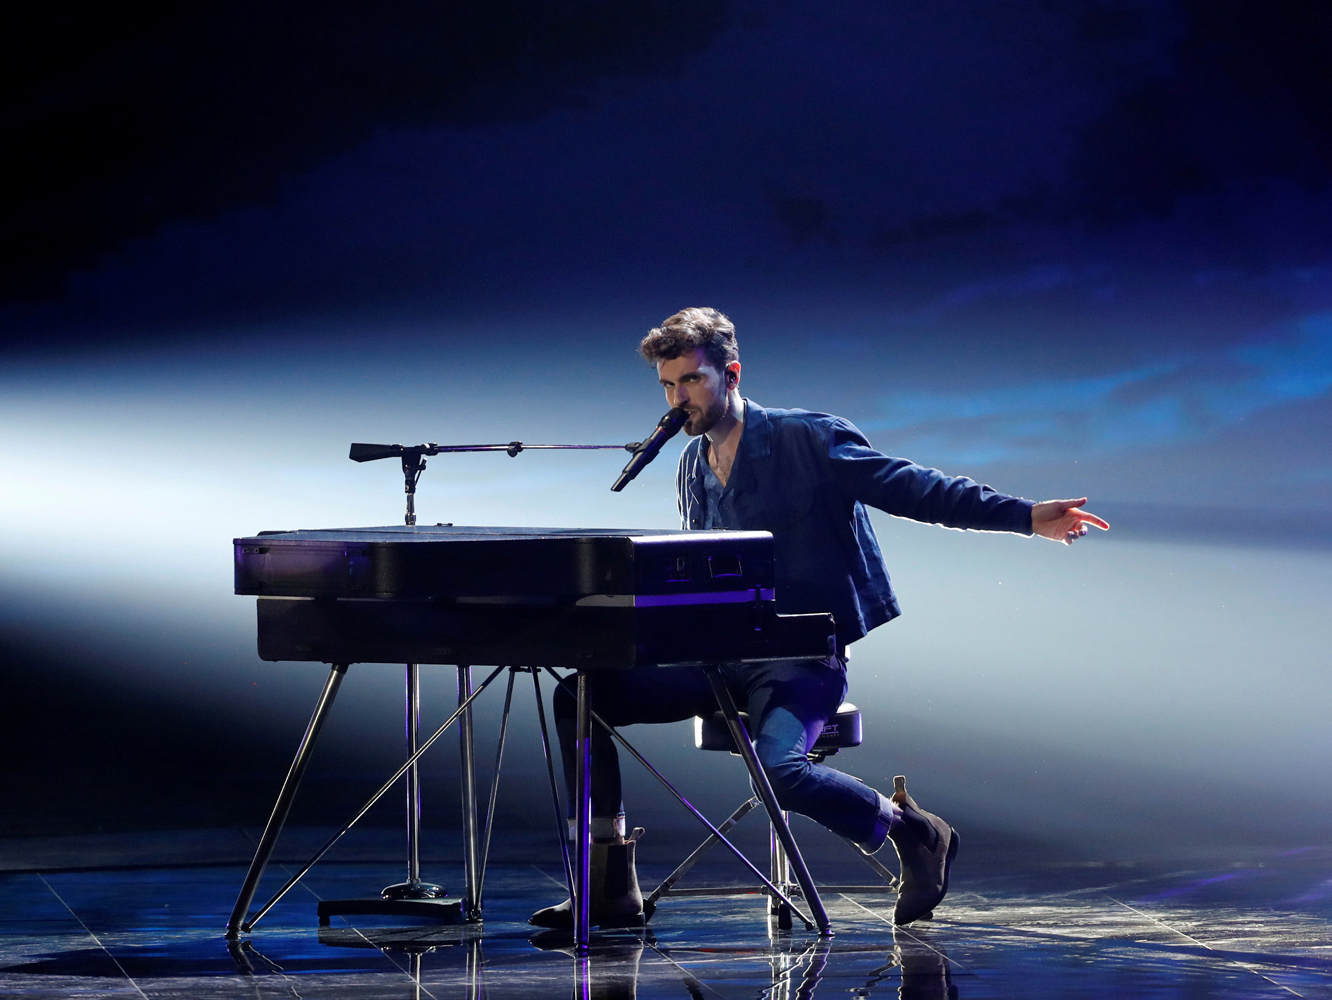  Se cumplen los pronósticos (otra vez) y Países Bajos gana Eurovisión 2019 con ‘Arcade’